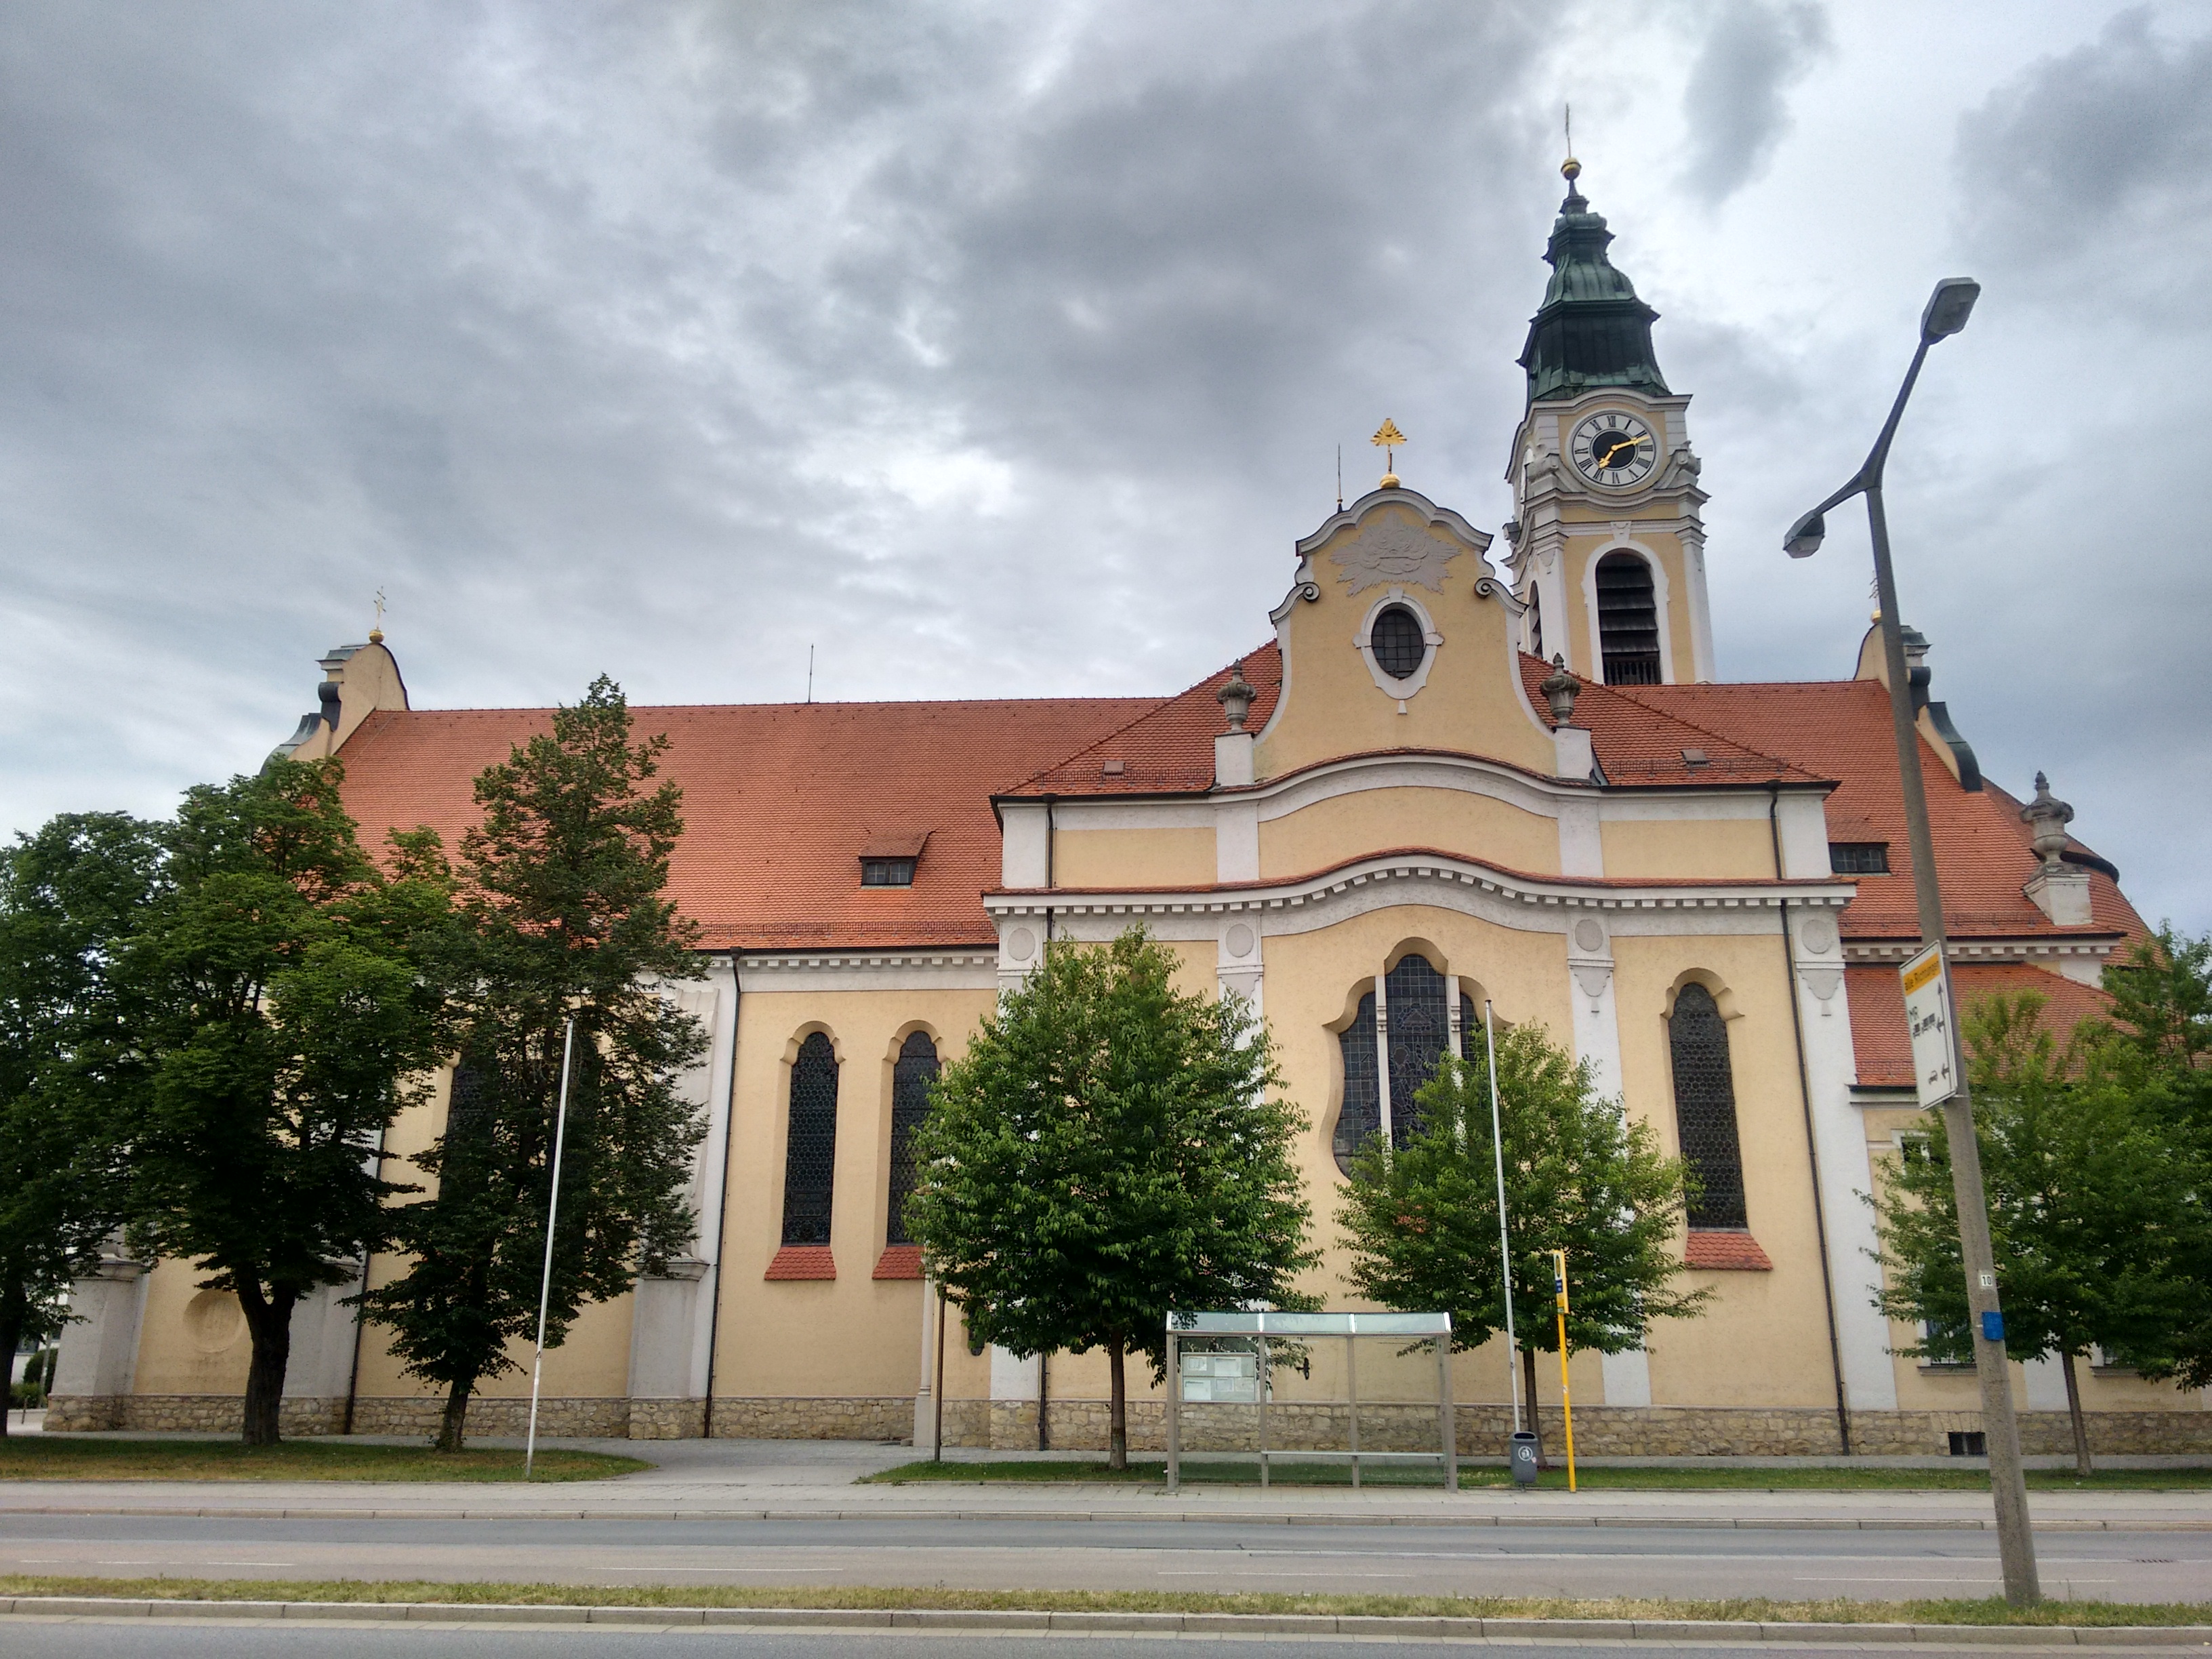 Kirche St. Josef im Ortsteil Reinhausen